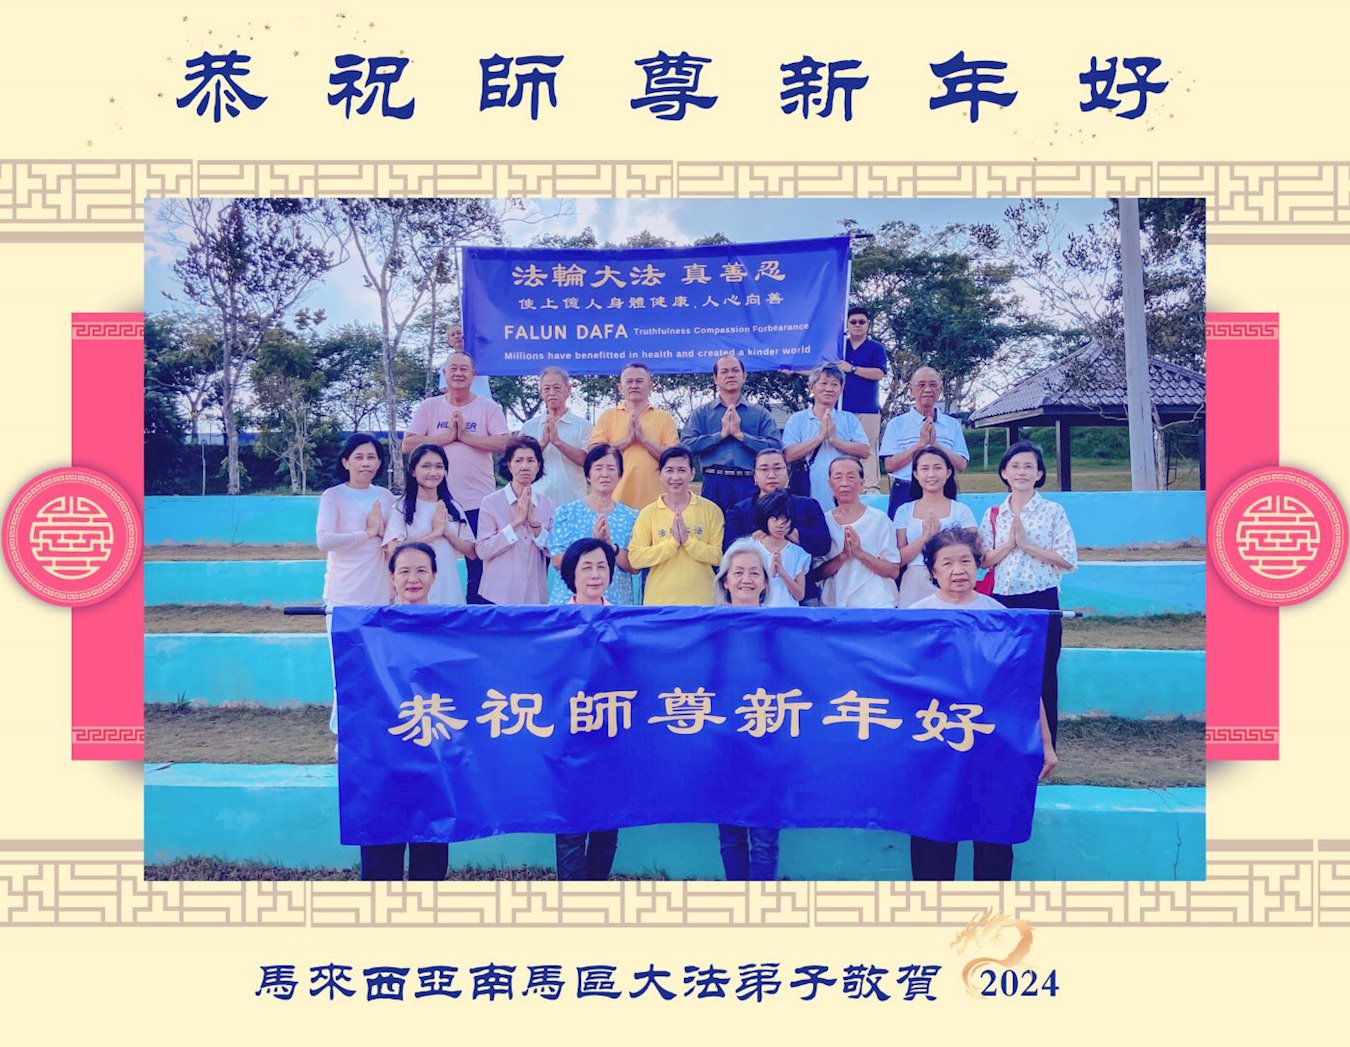 Image for article Os praticantes do Falun Dafa da Malásia desejam respeitosamente ao Mestre Li Hongzhi um Feliz Ano Novo Chinês